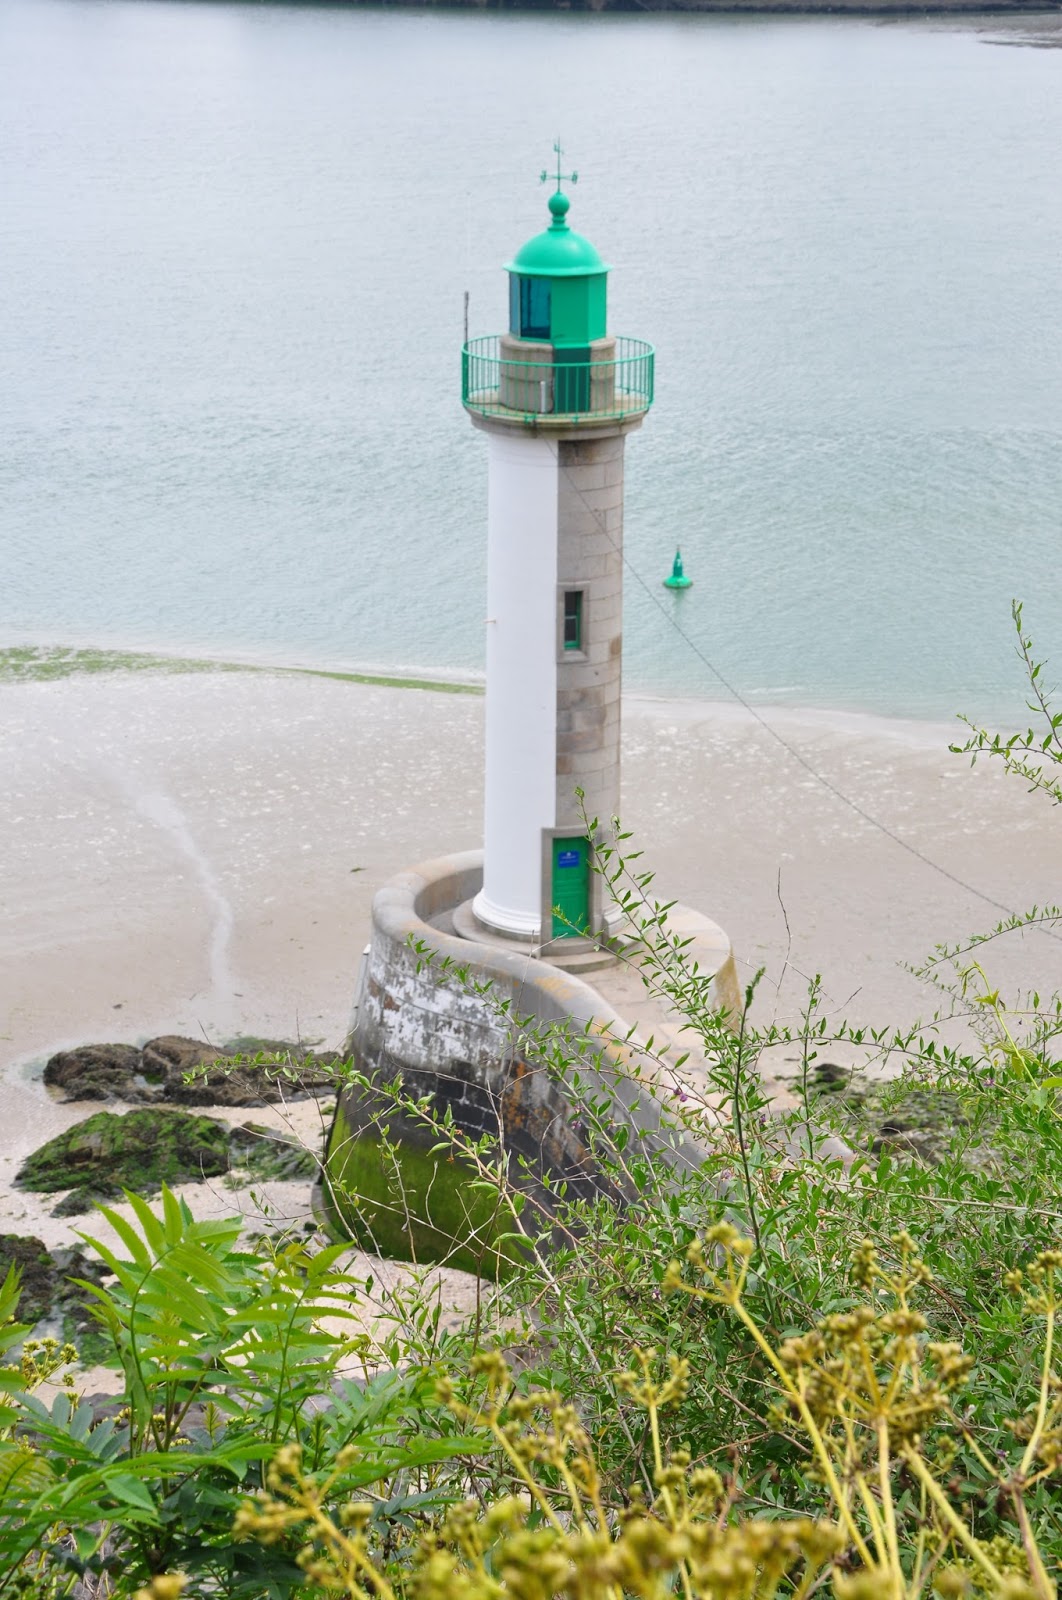 Le phare de la Pointe-à-l'Aigle